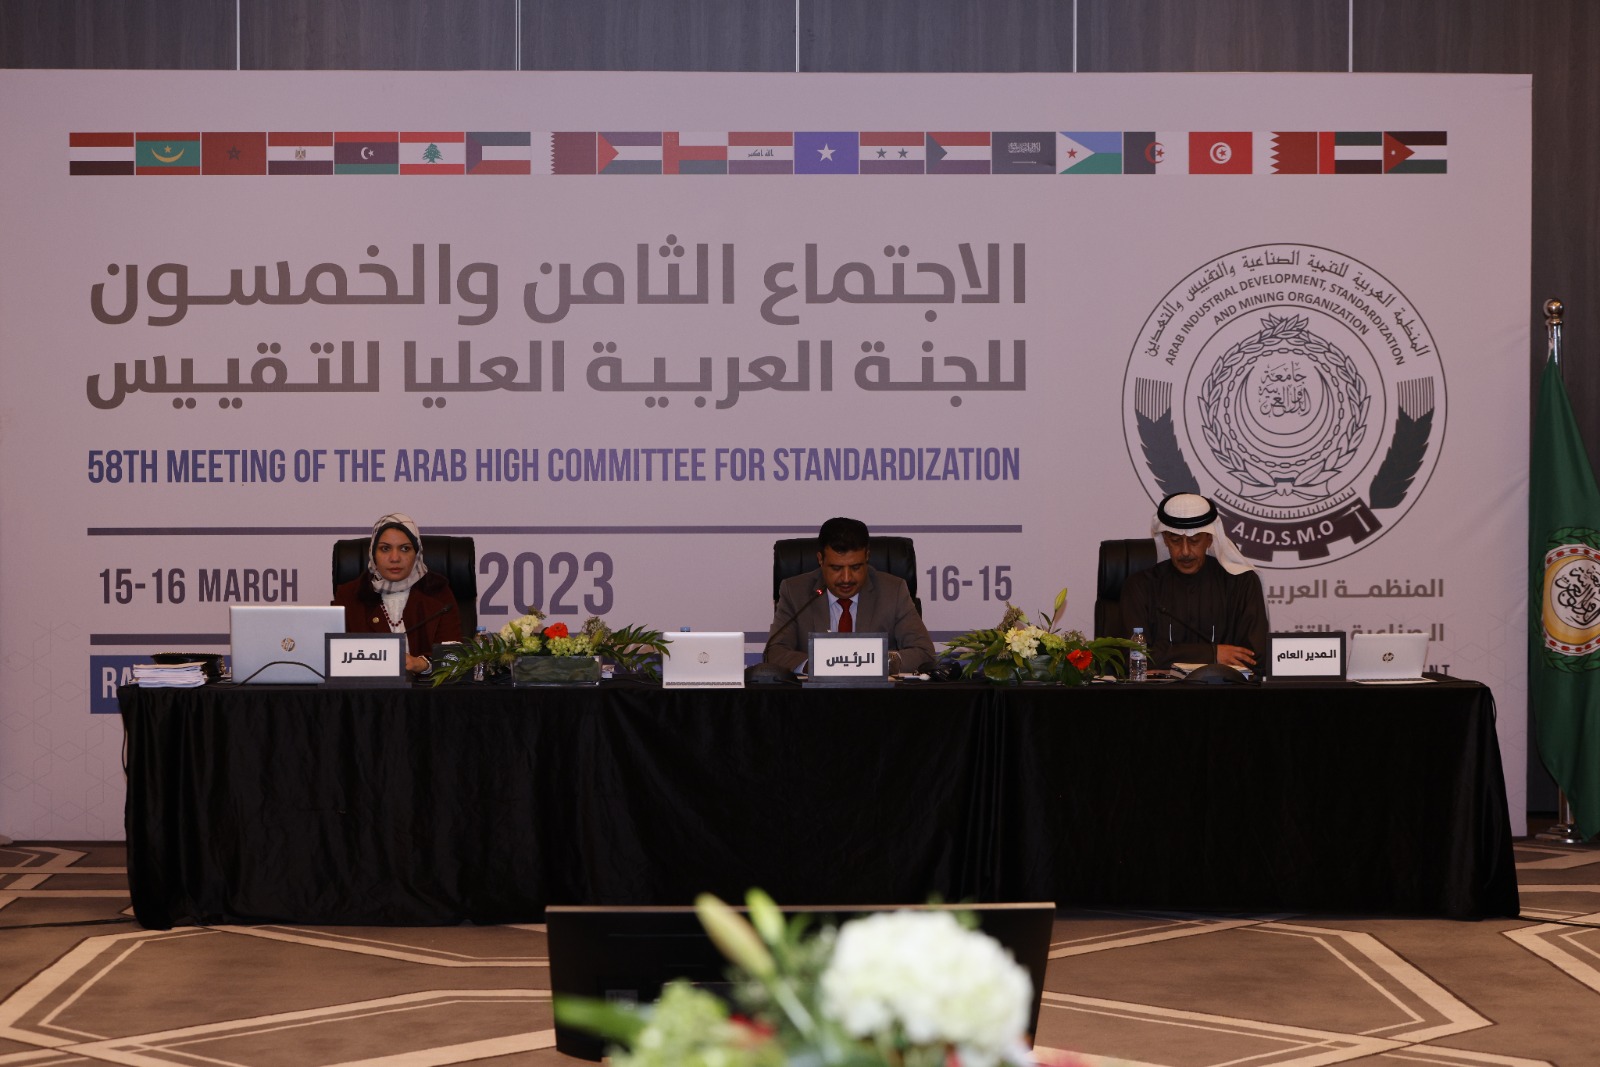 اليمن تترأس اجتماع اللجنة العربية العليا للتقييس بالمغرب